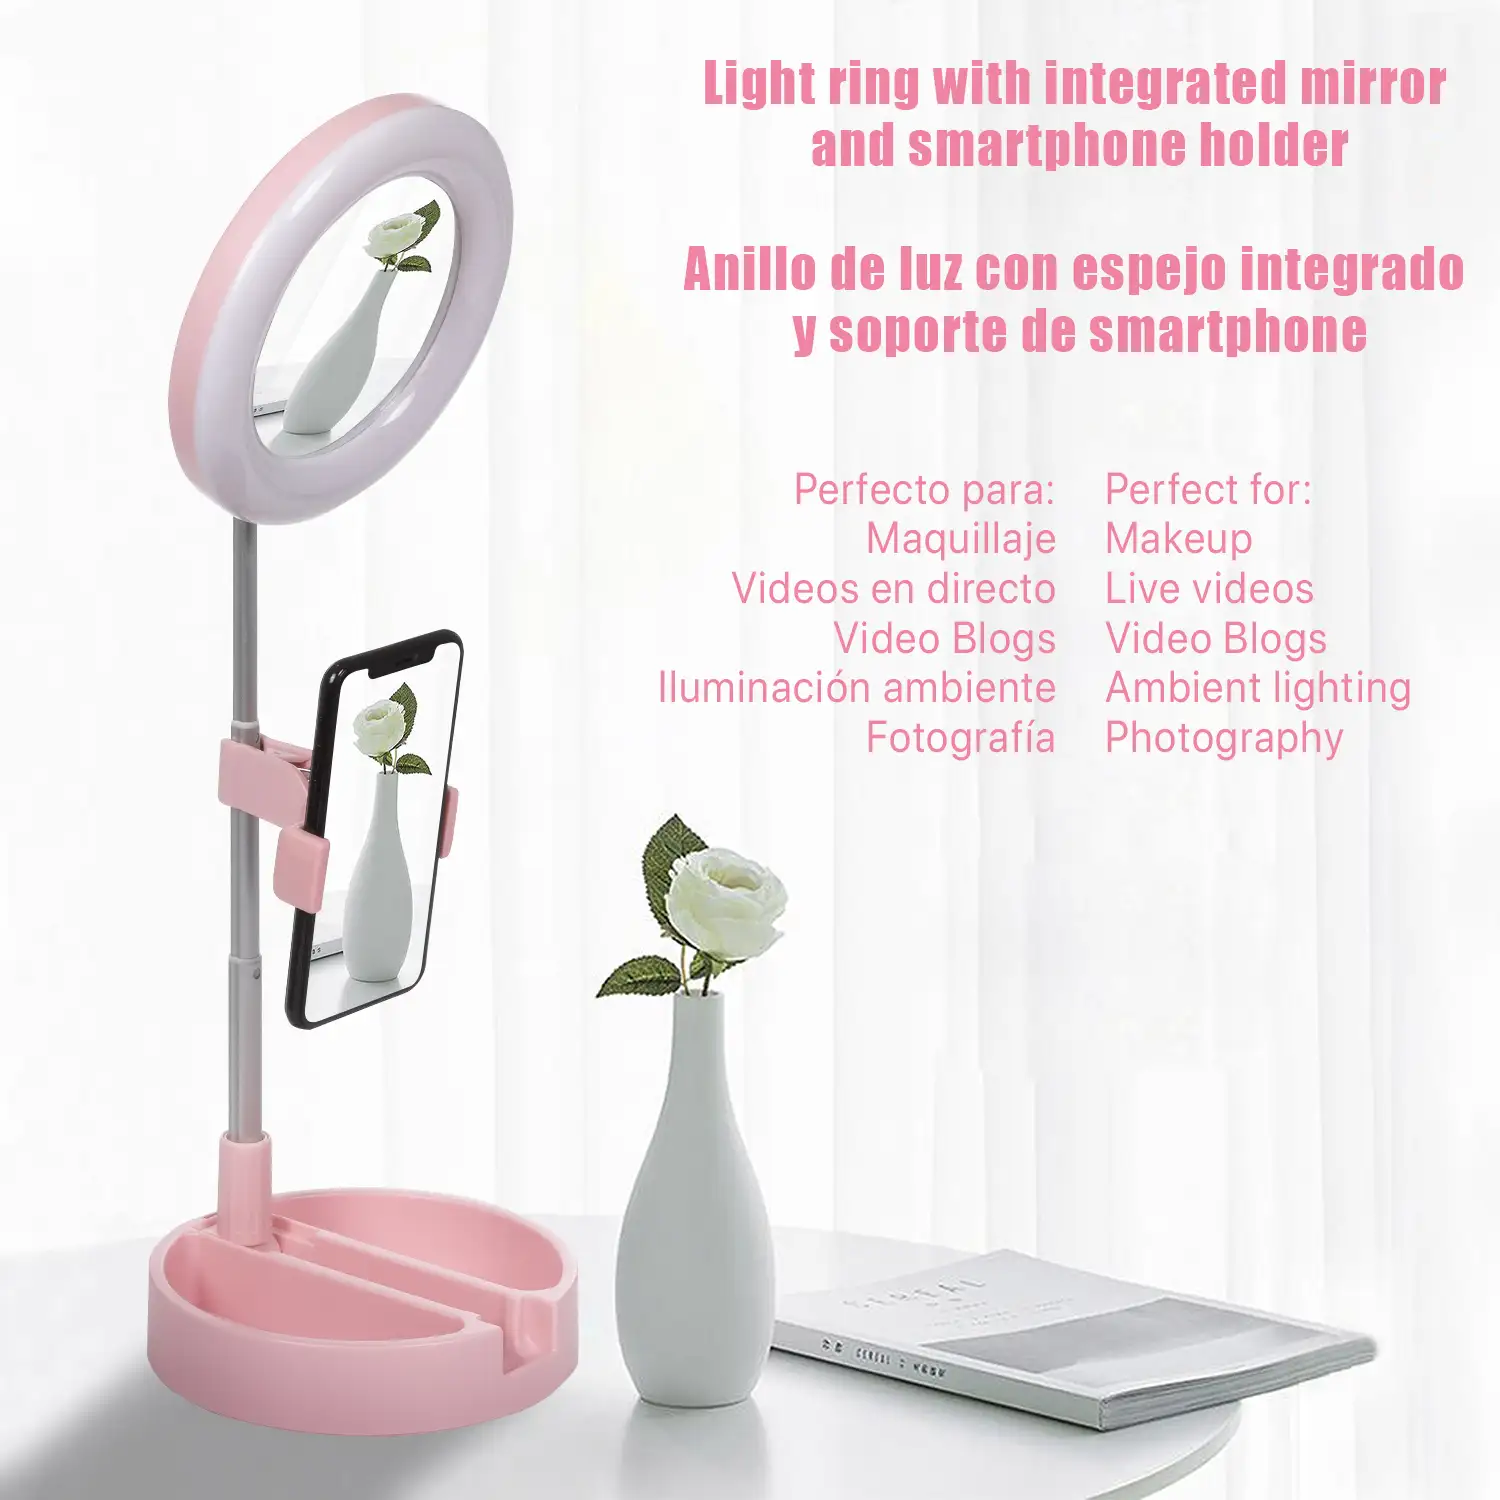 Anillo Luz LED estudio plegable extensible sobremesa con soporte smartphone. Espejo y caja para maquillaje